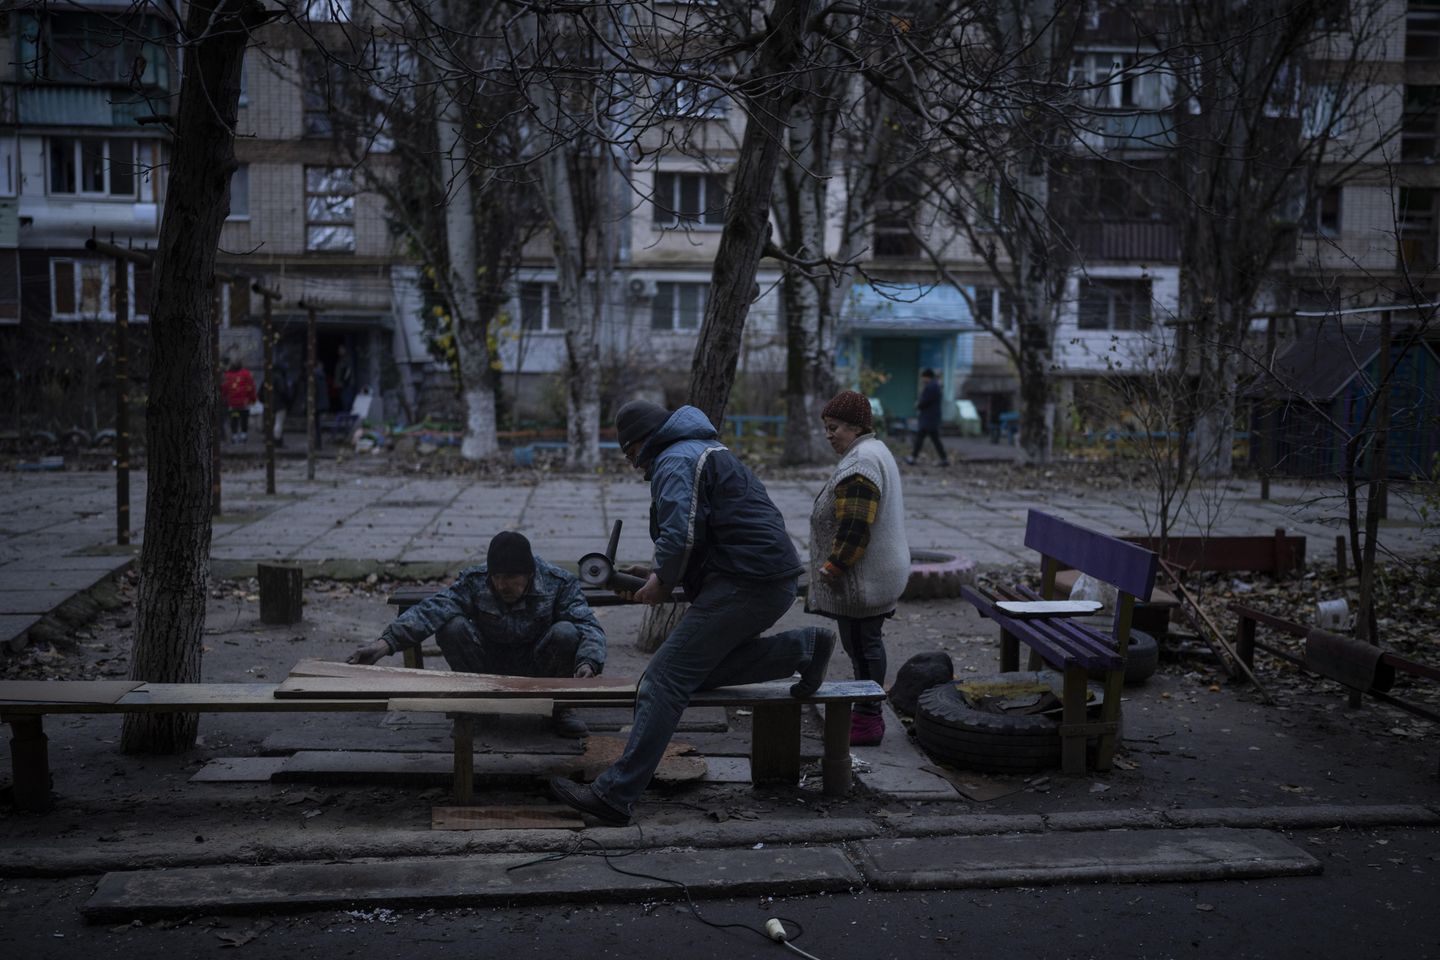 En karanlık saat: Rusya sivil hedefleri acımasızca vururken Ukrayna'yı soğuk ve acımasız bir kış bekliyor